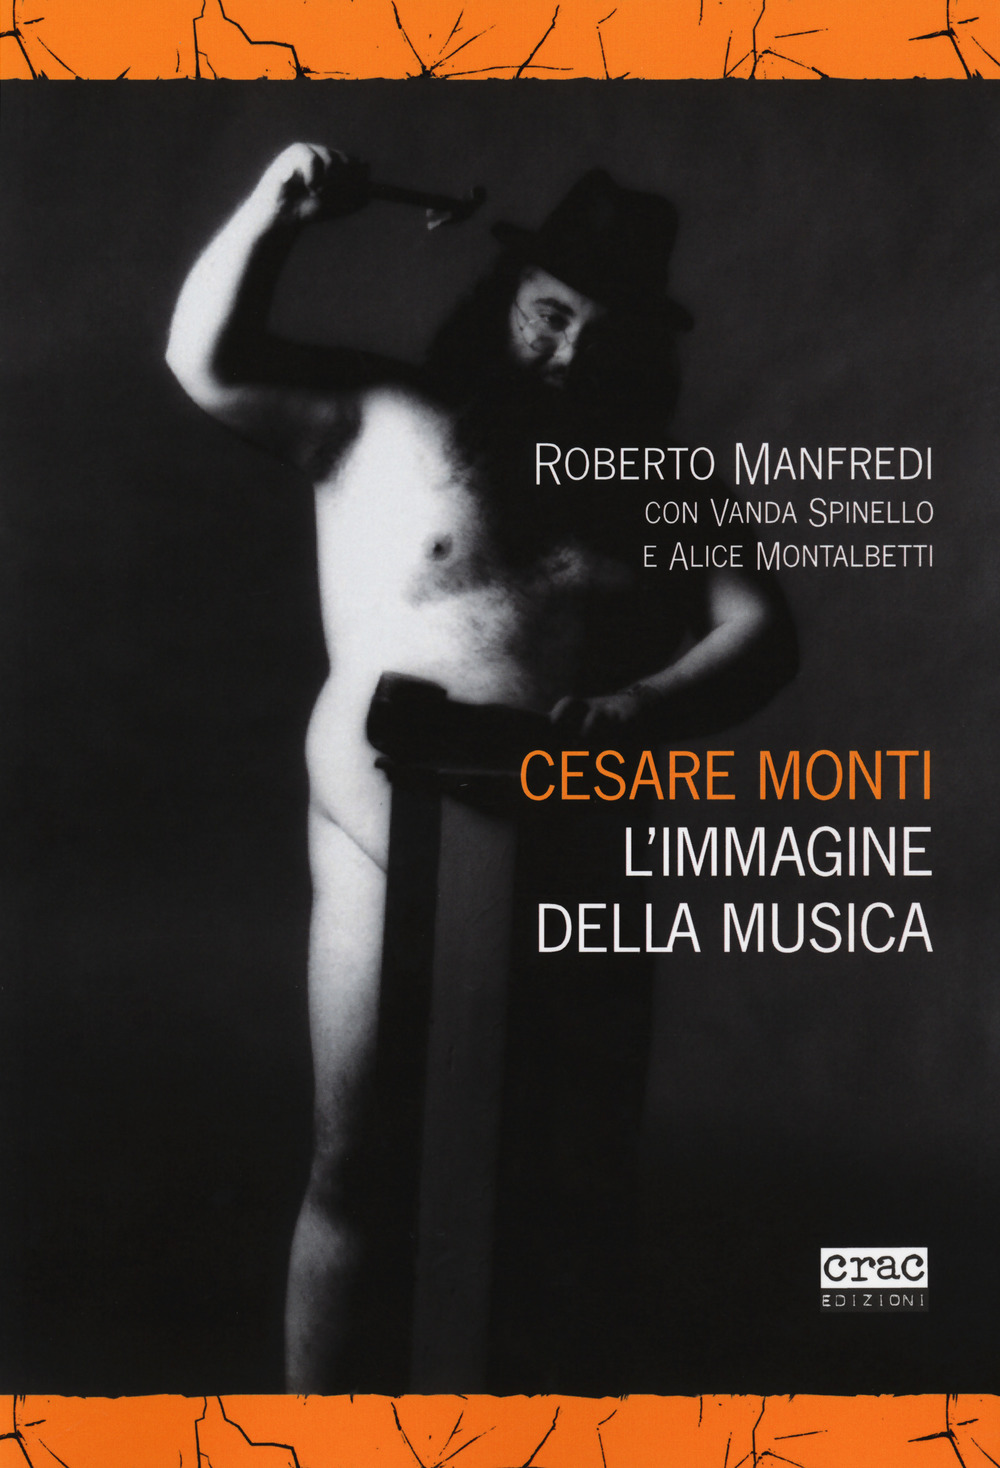 Cesare Monti. L'immagine della musica